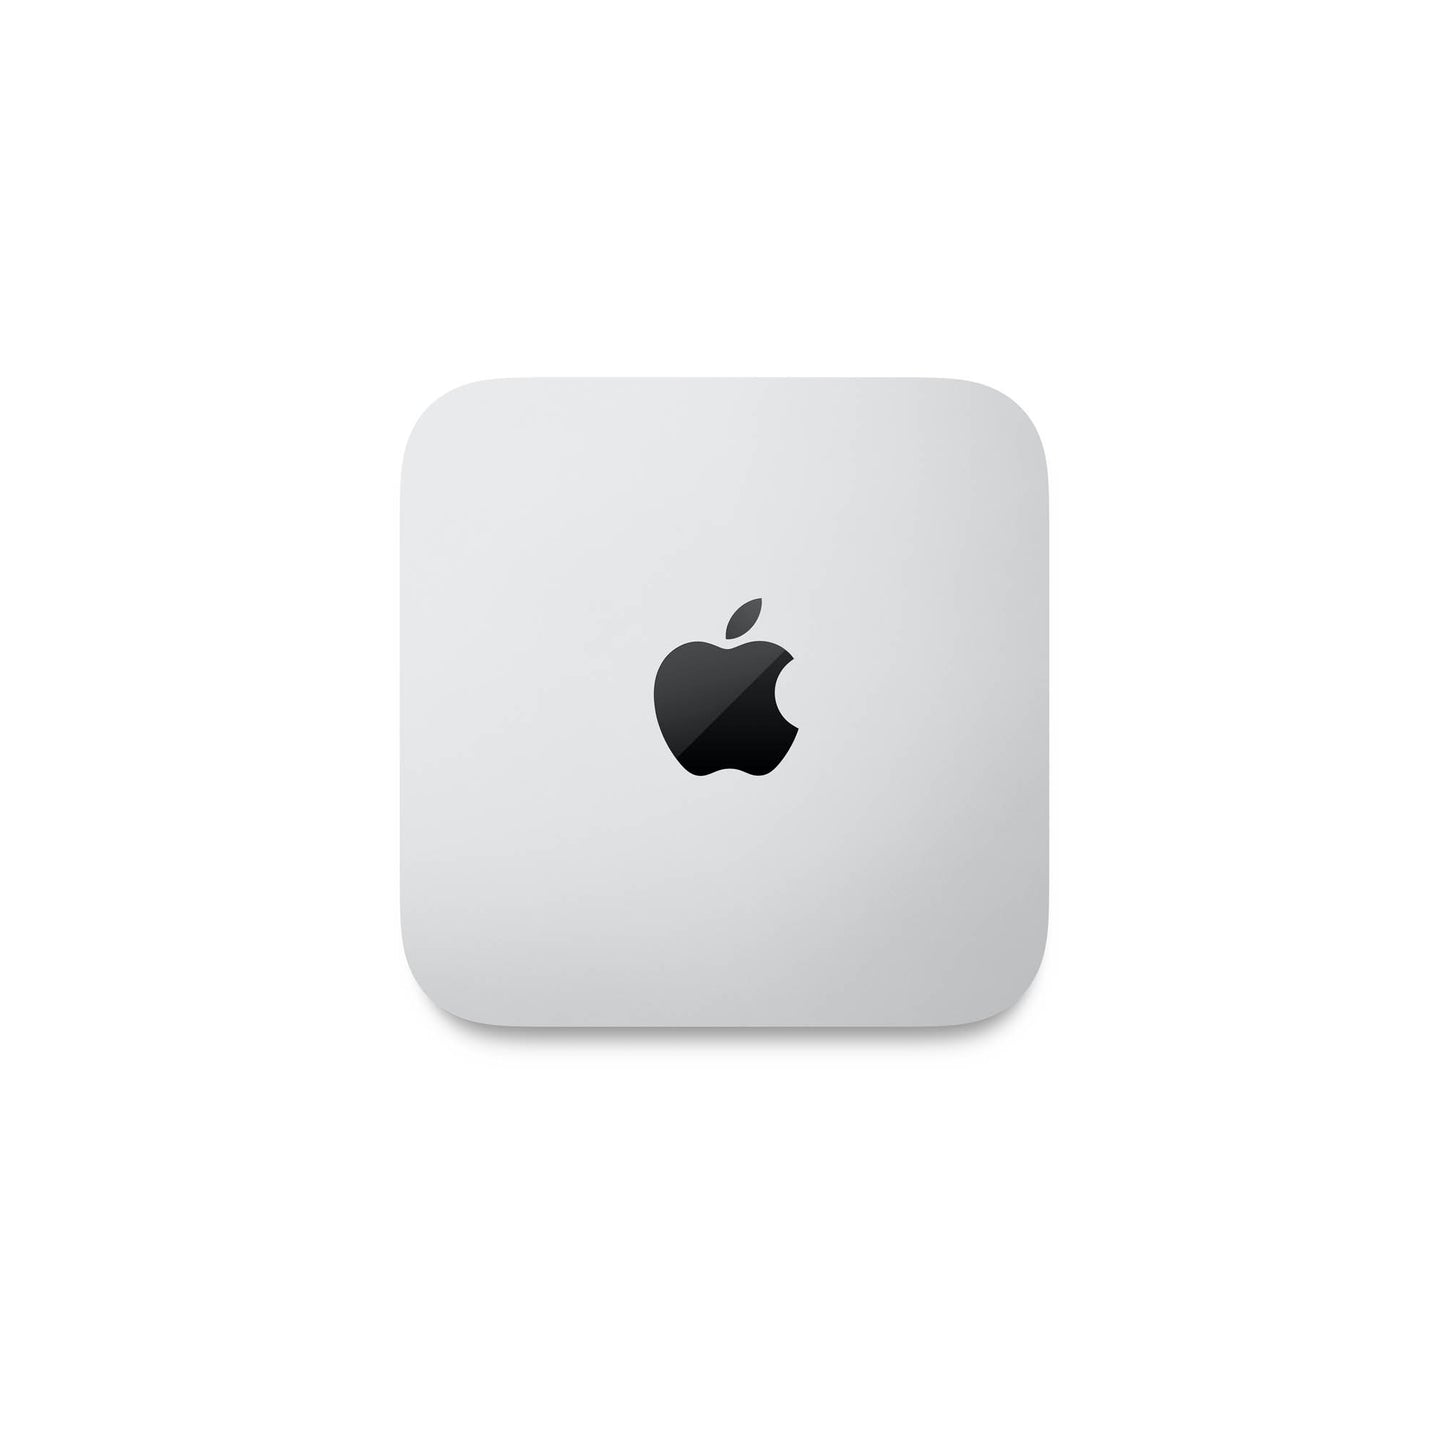 Mac mini: Apple M2 chip with 8-core CPU and 10-core GPU, 256GB SSD